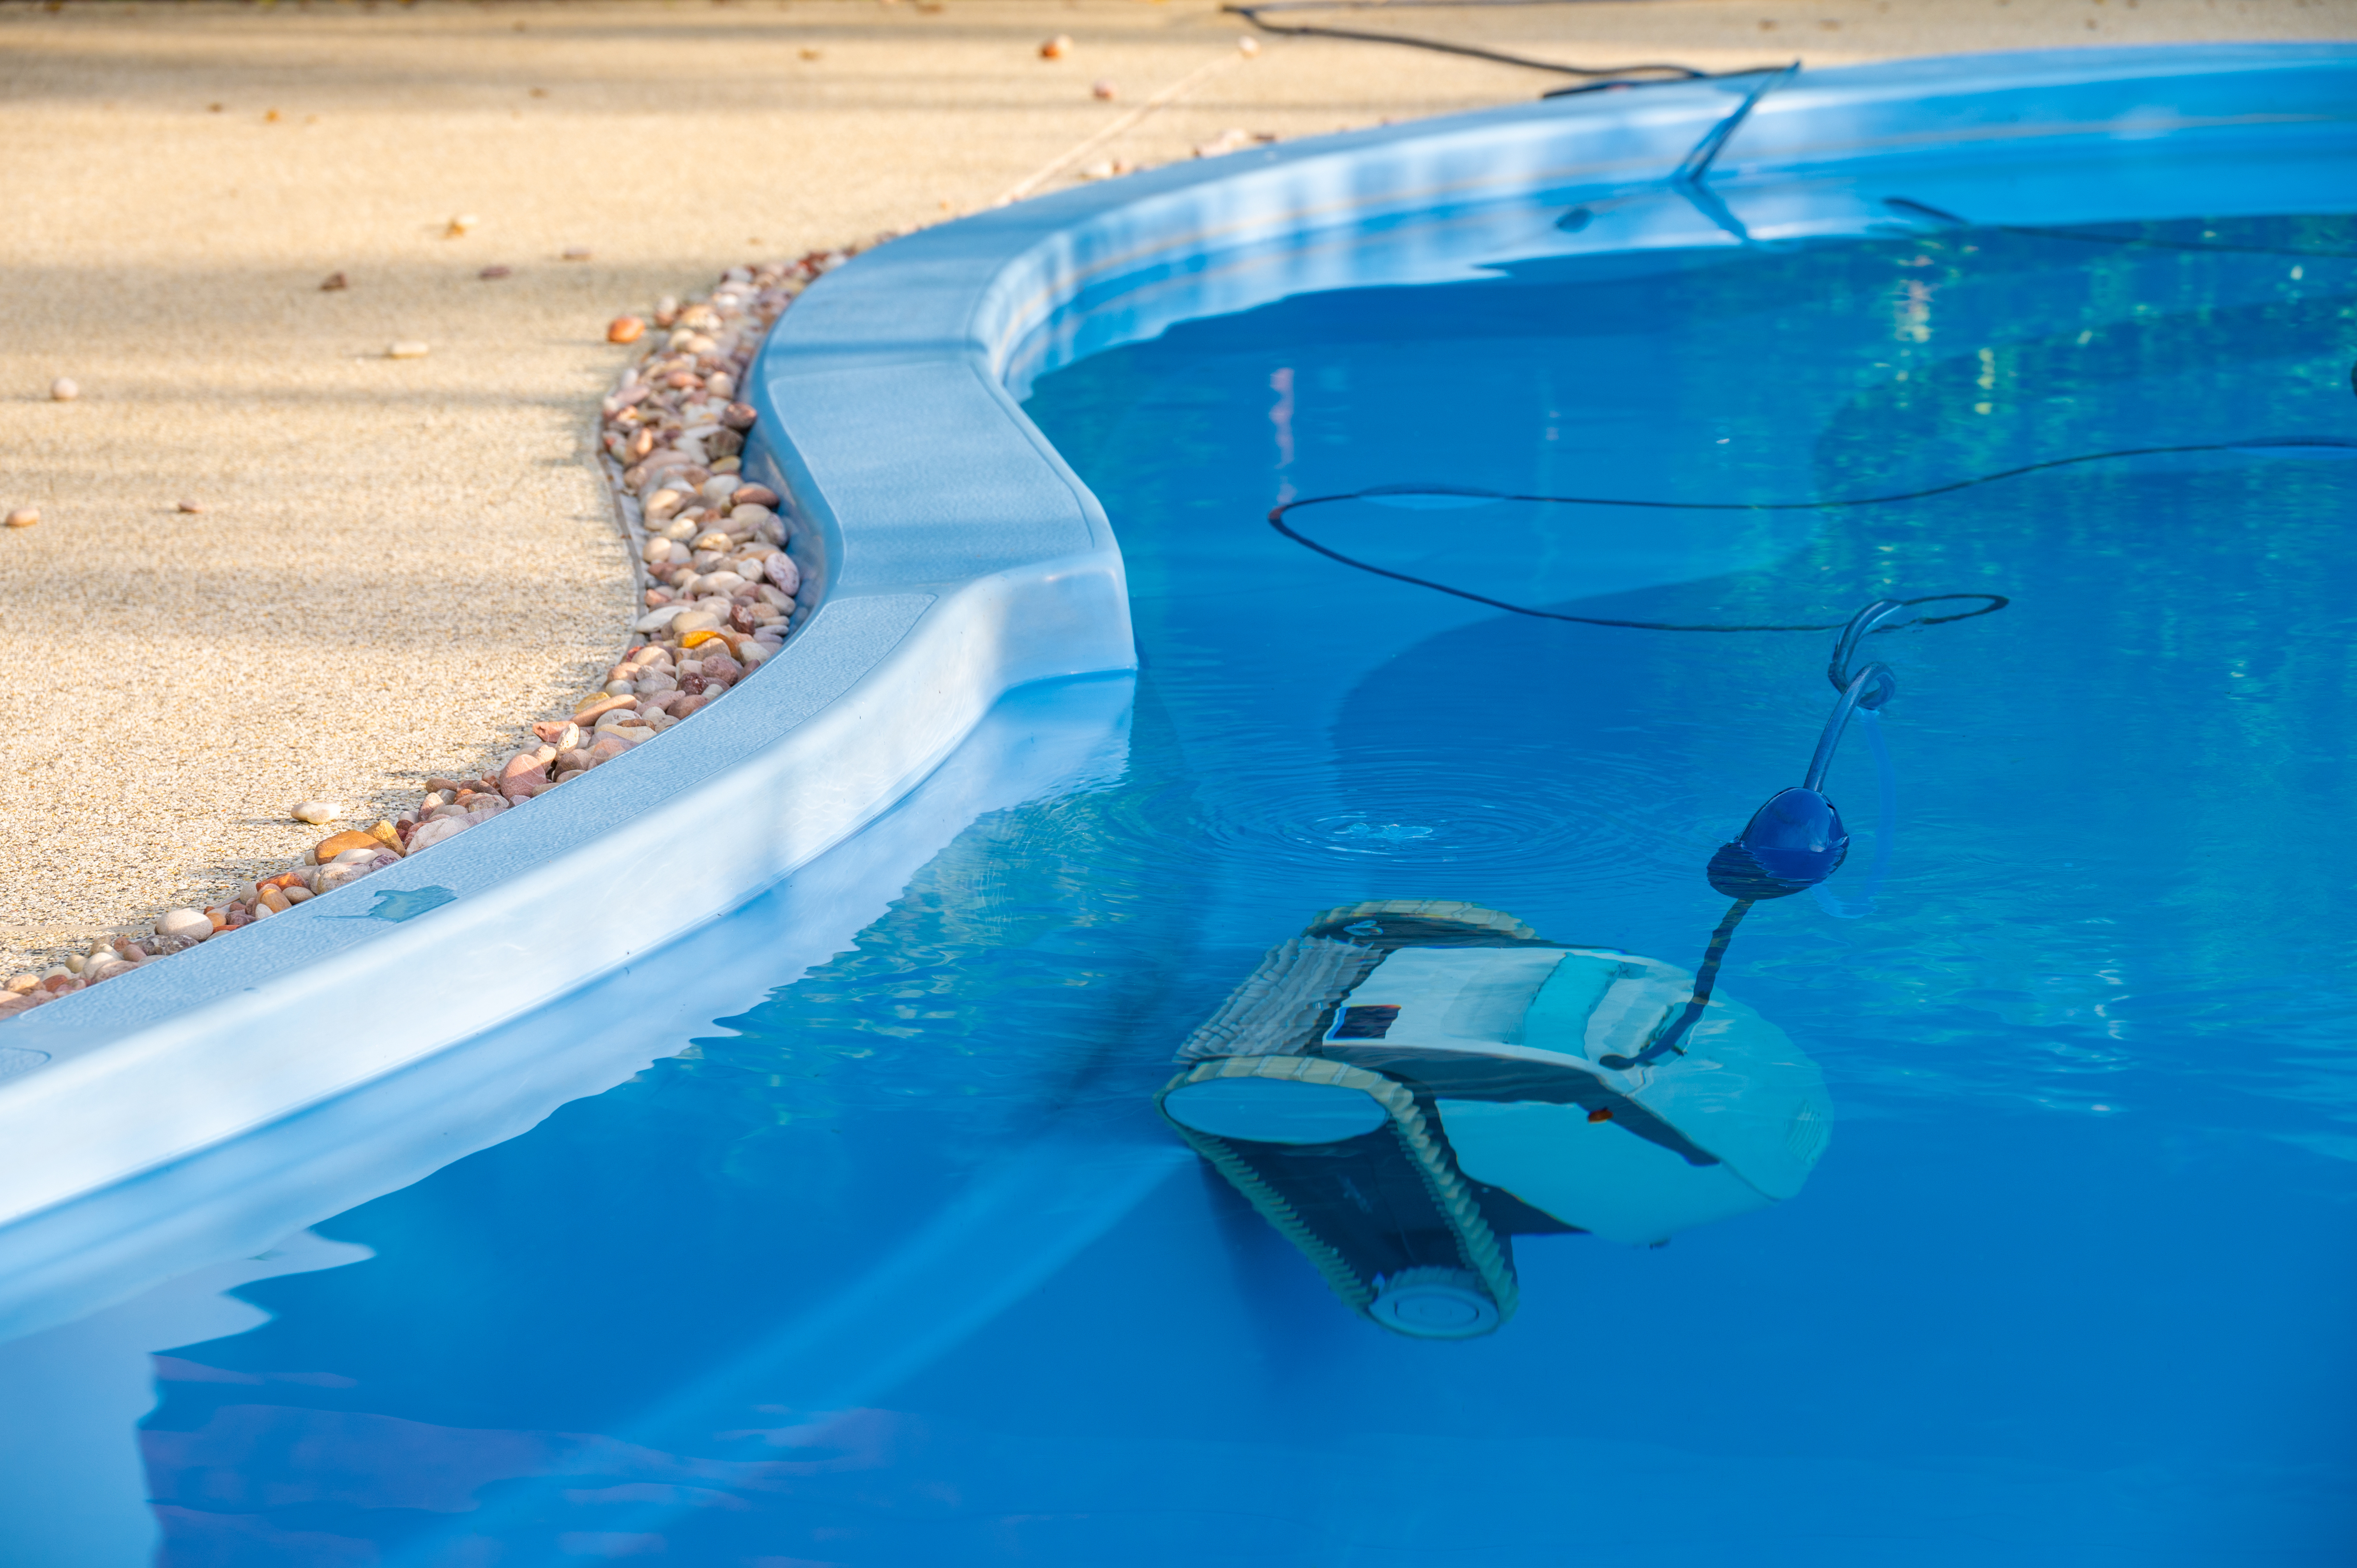 Les meilleures offres de robot de piscine sont à saisir lors du Prime Day Amazon © boyloso, Adobe Stock